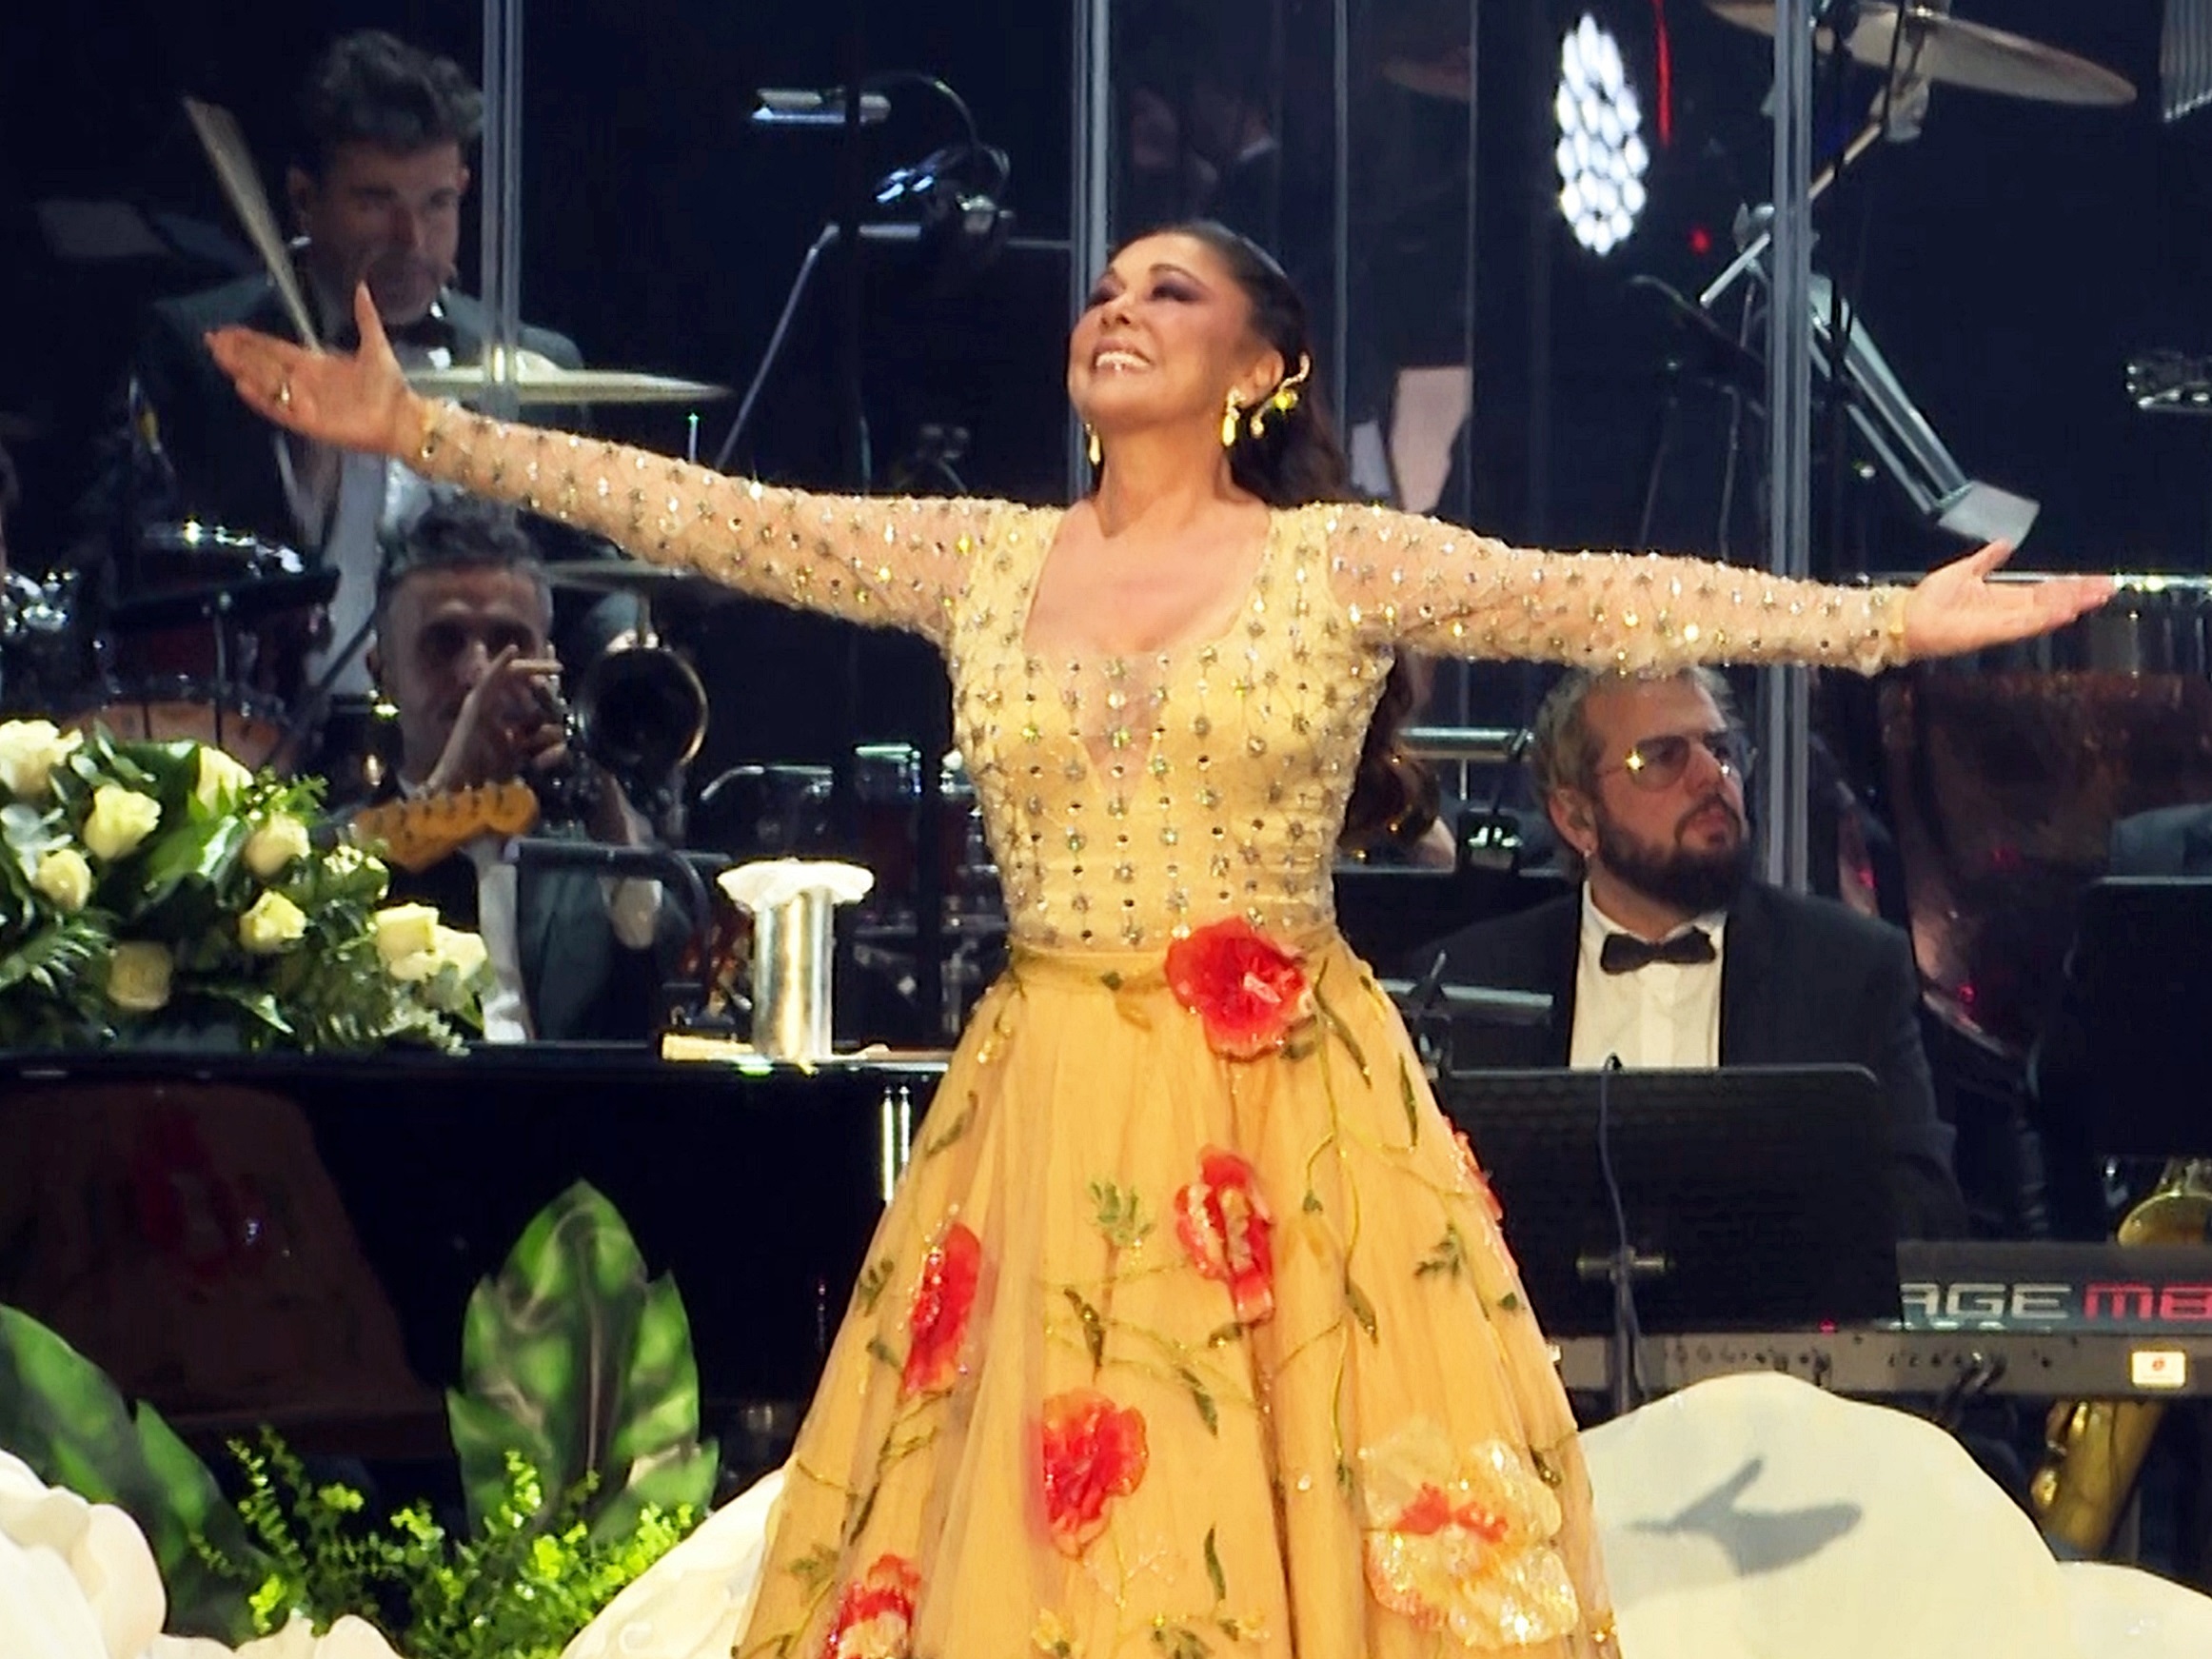 Isabel Pantoja en el escenario durante su concierto a 13 de Enero de 2023 en Bilbao (España).
Europa Press Reportajes / Europa Press
14/1/2024